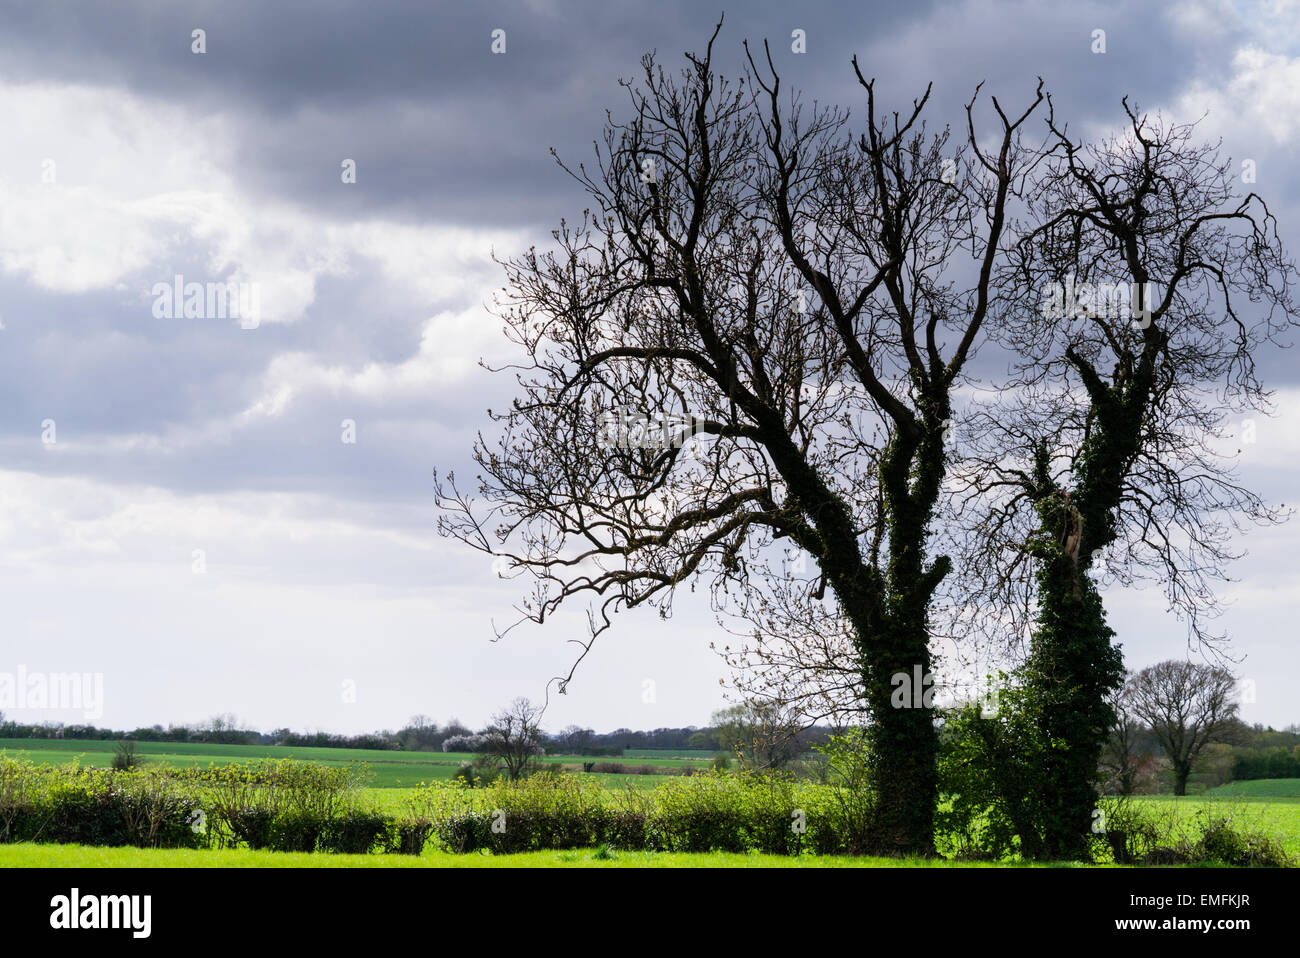 Yorkshire Landschaft - Baum Silhouetten gegen dramatischen Wolkenhimmel Stockfoto